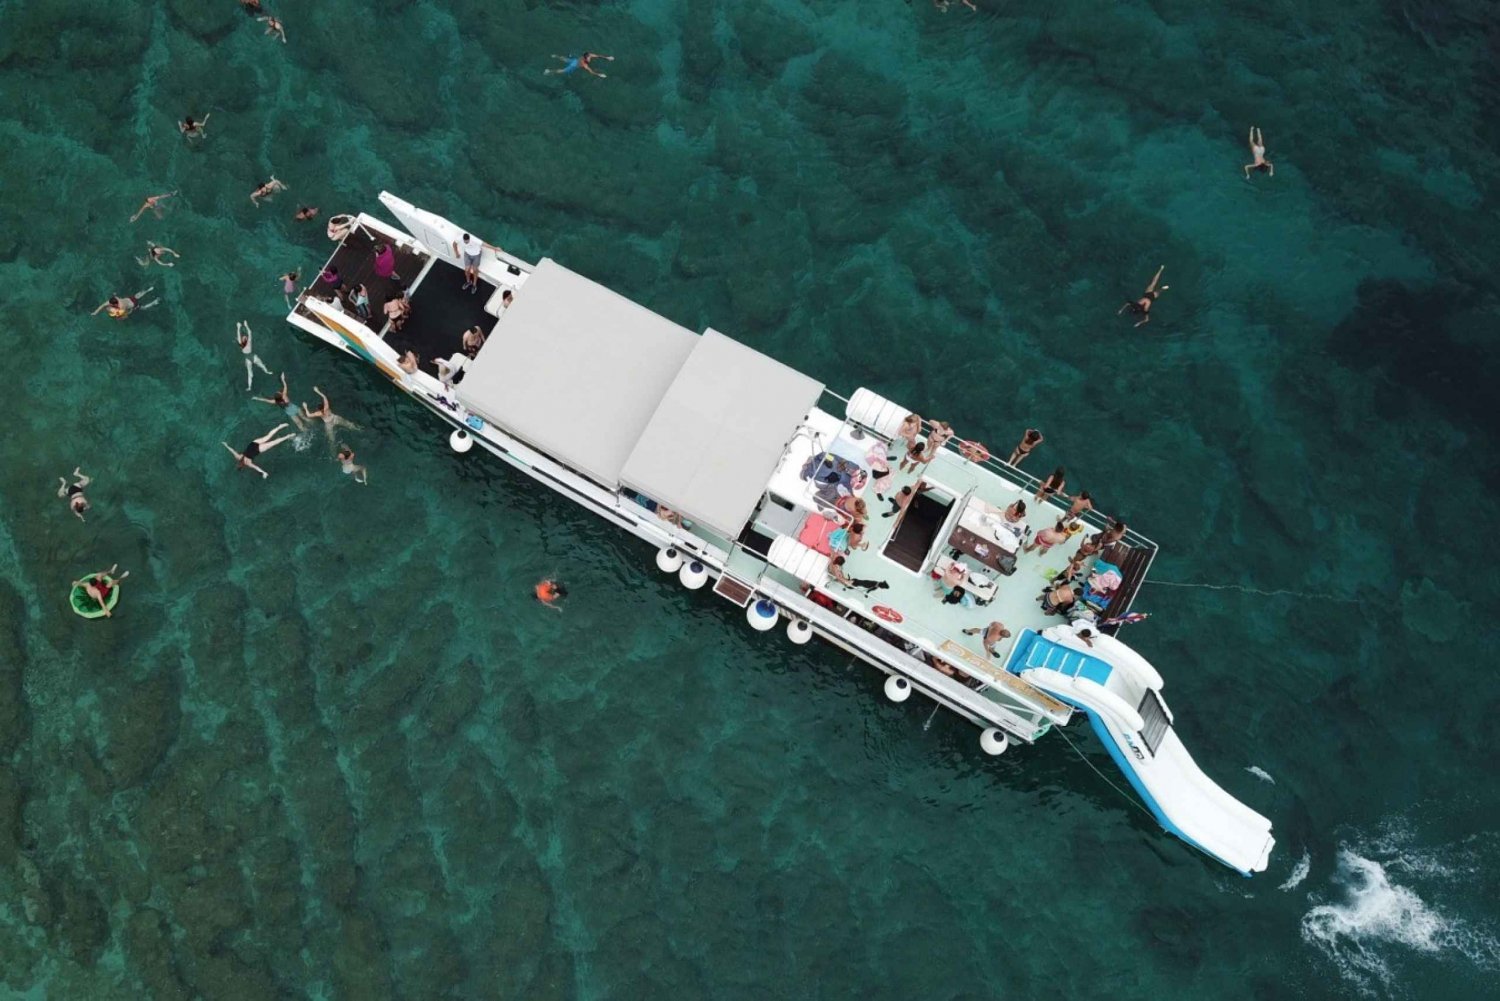 Fra Split: Blue Lagoon og øyene båttur med lunsj